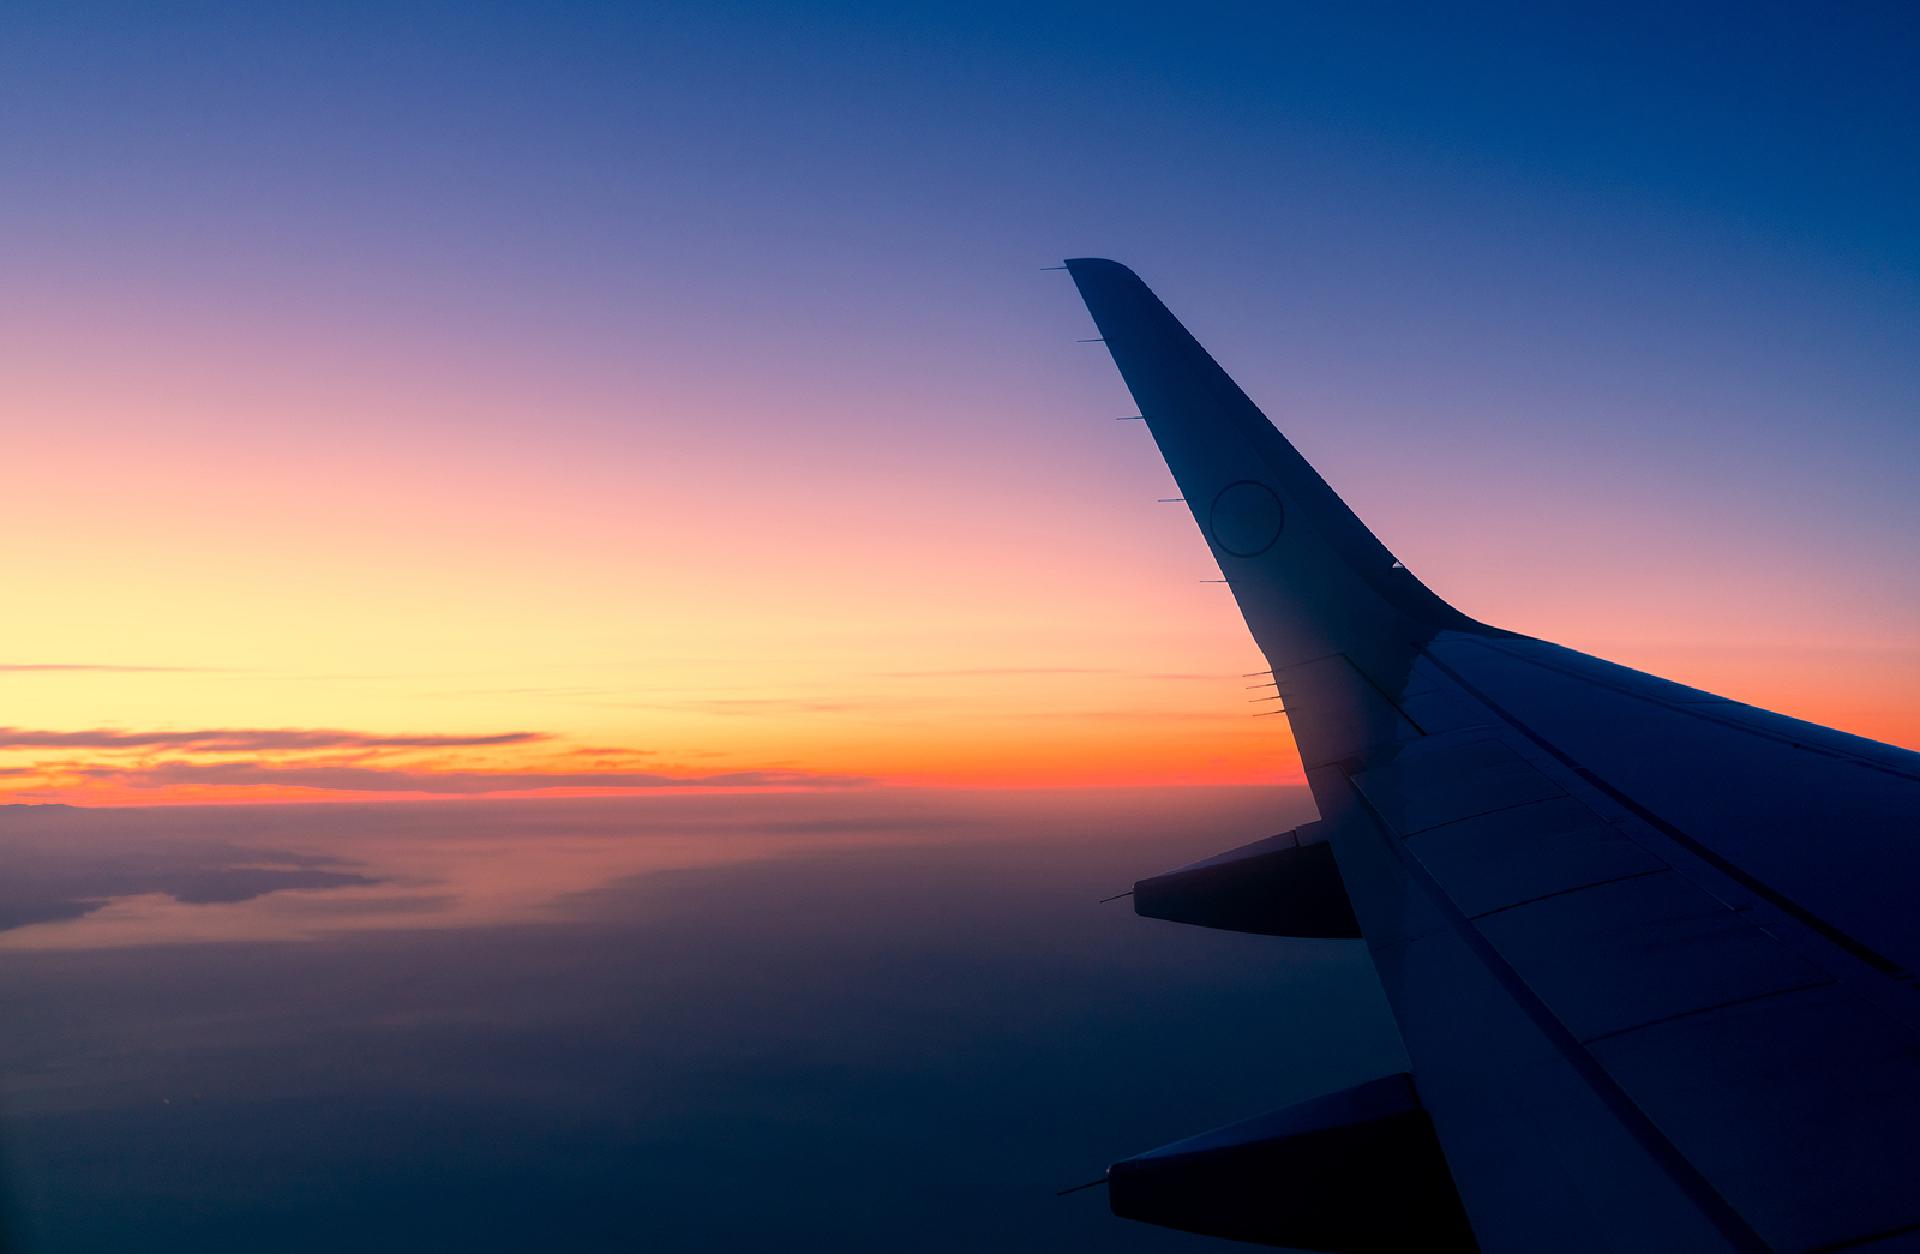 La almohada propia en los viajes y vuelos ¿Qué hace la gente